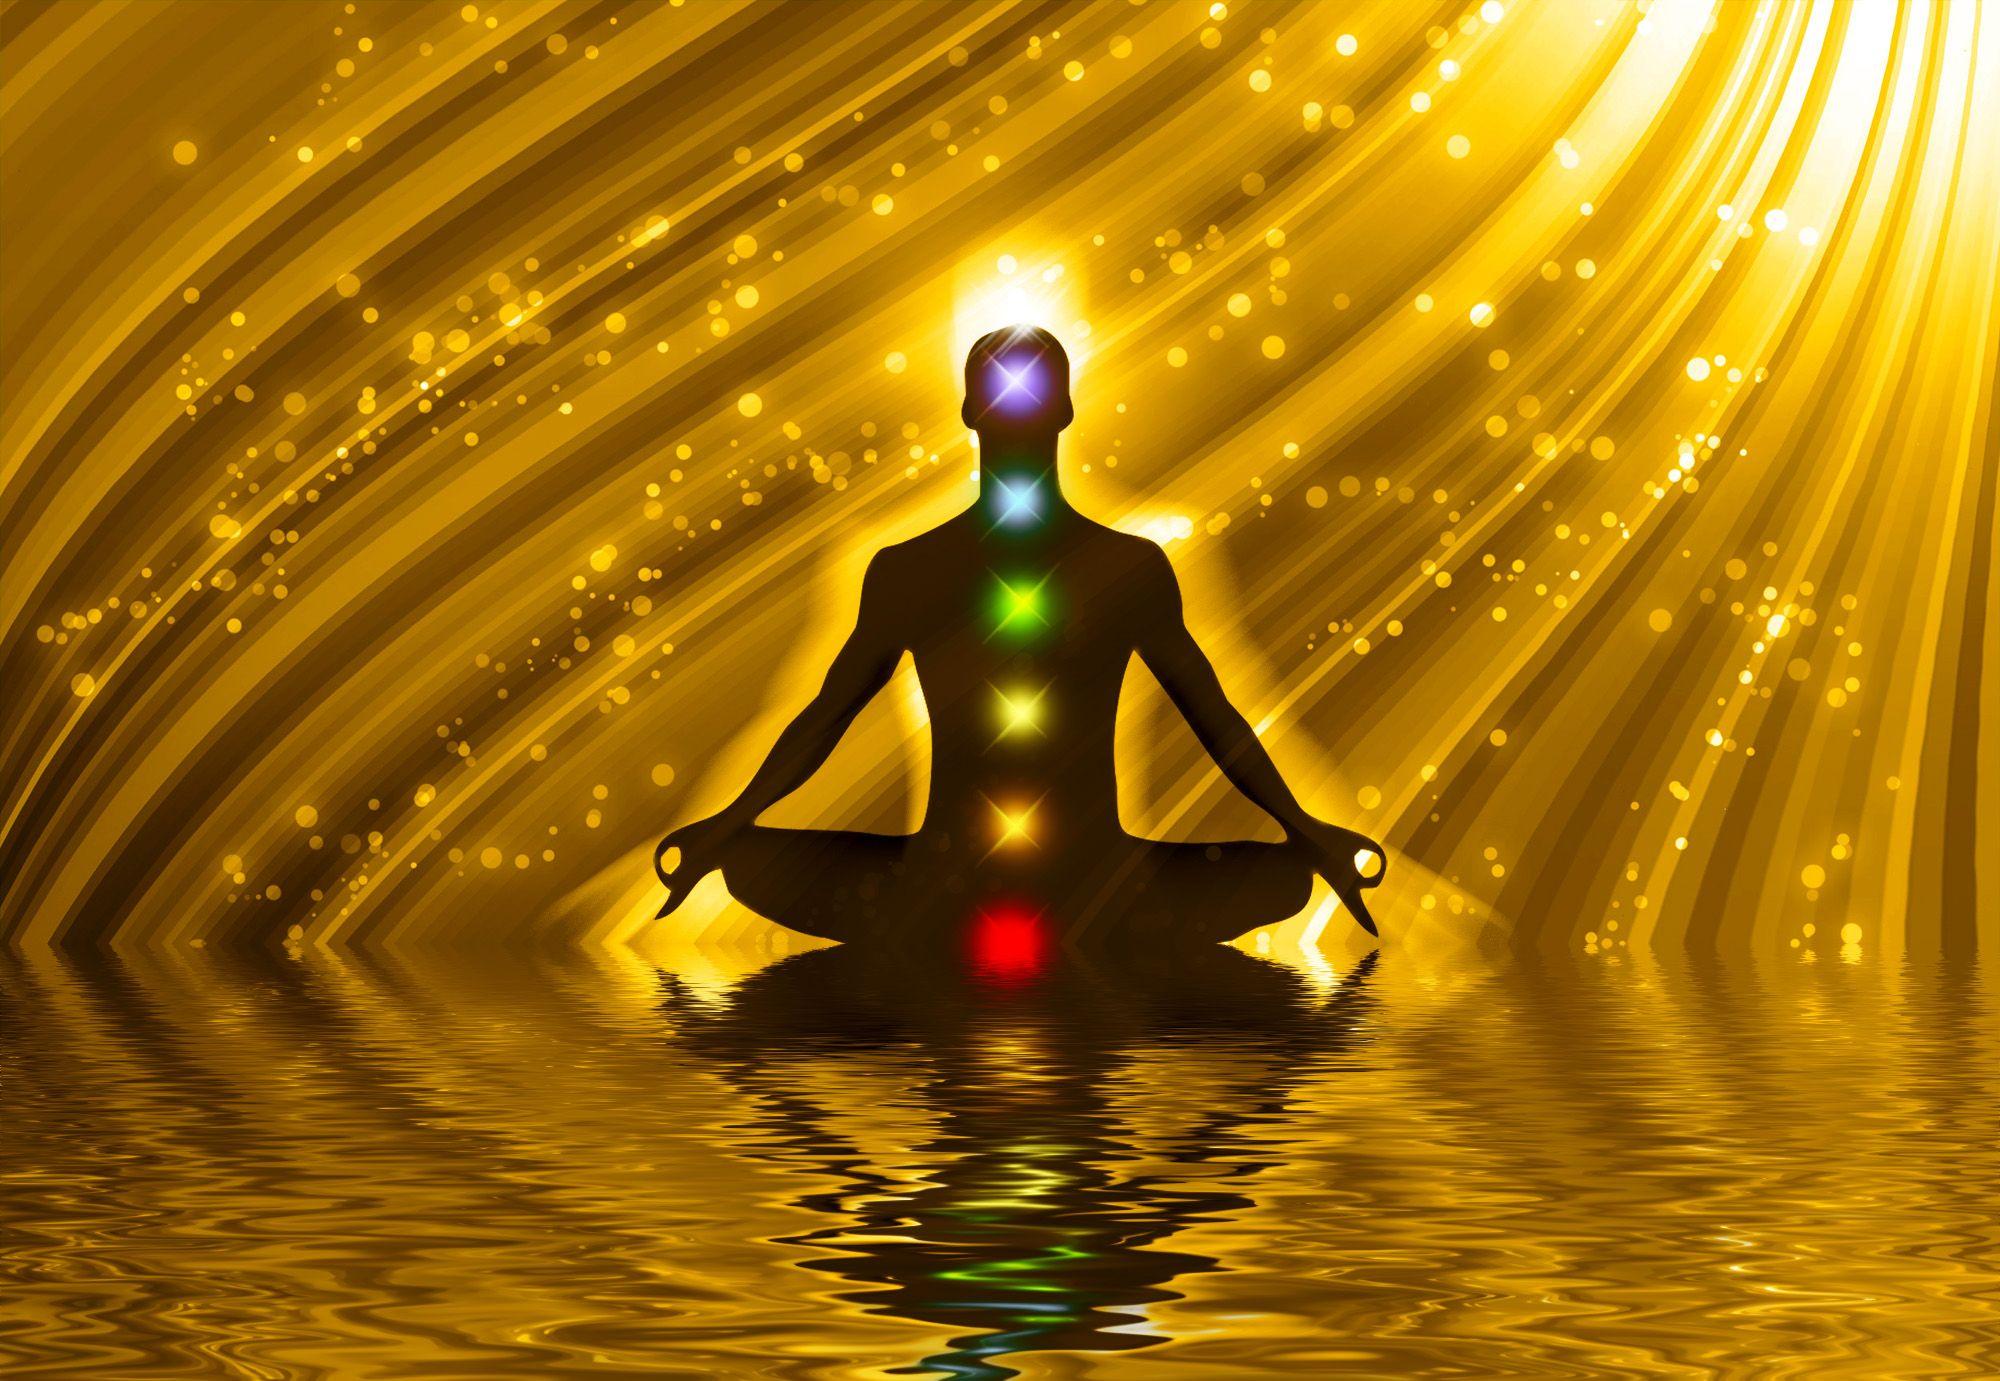 Meditation Chakra Art HD Wallpaper, Background Image